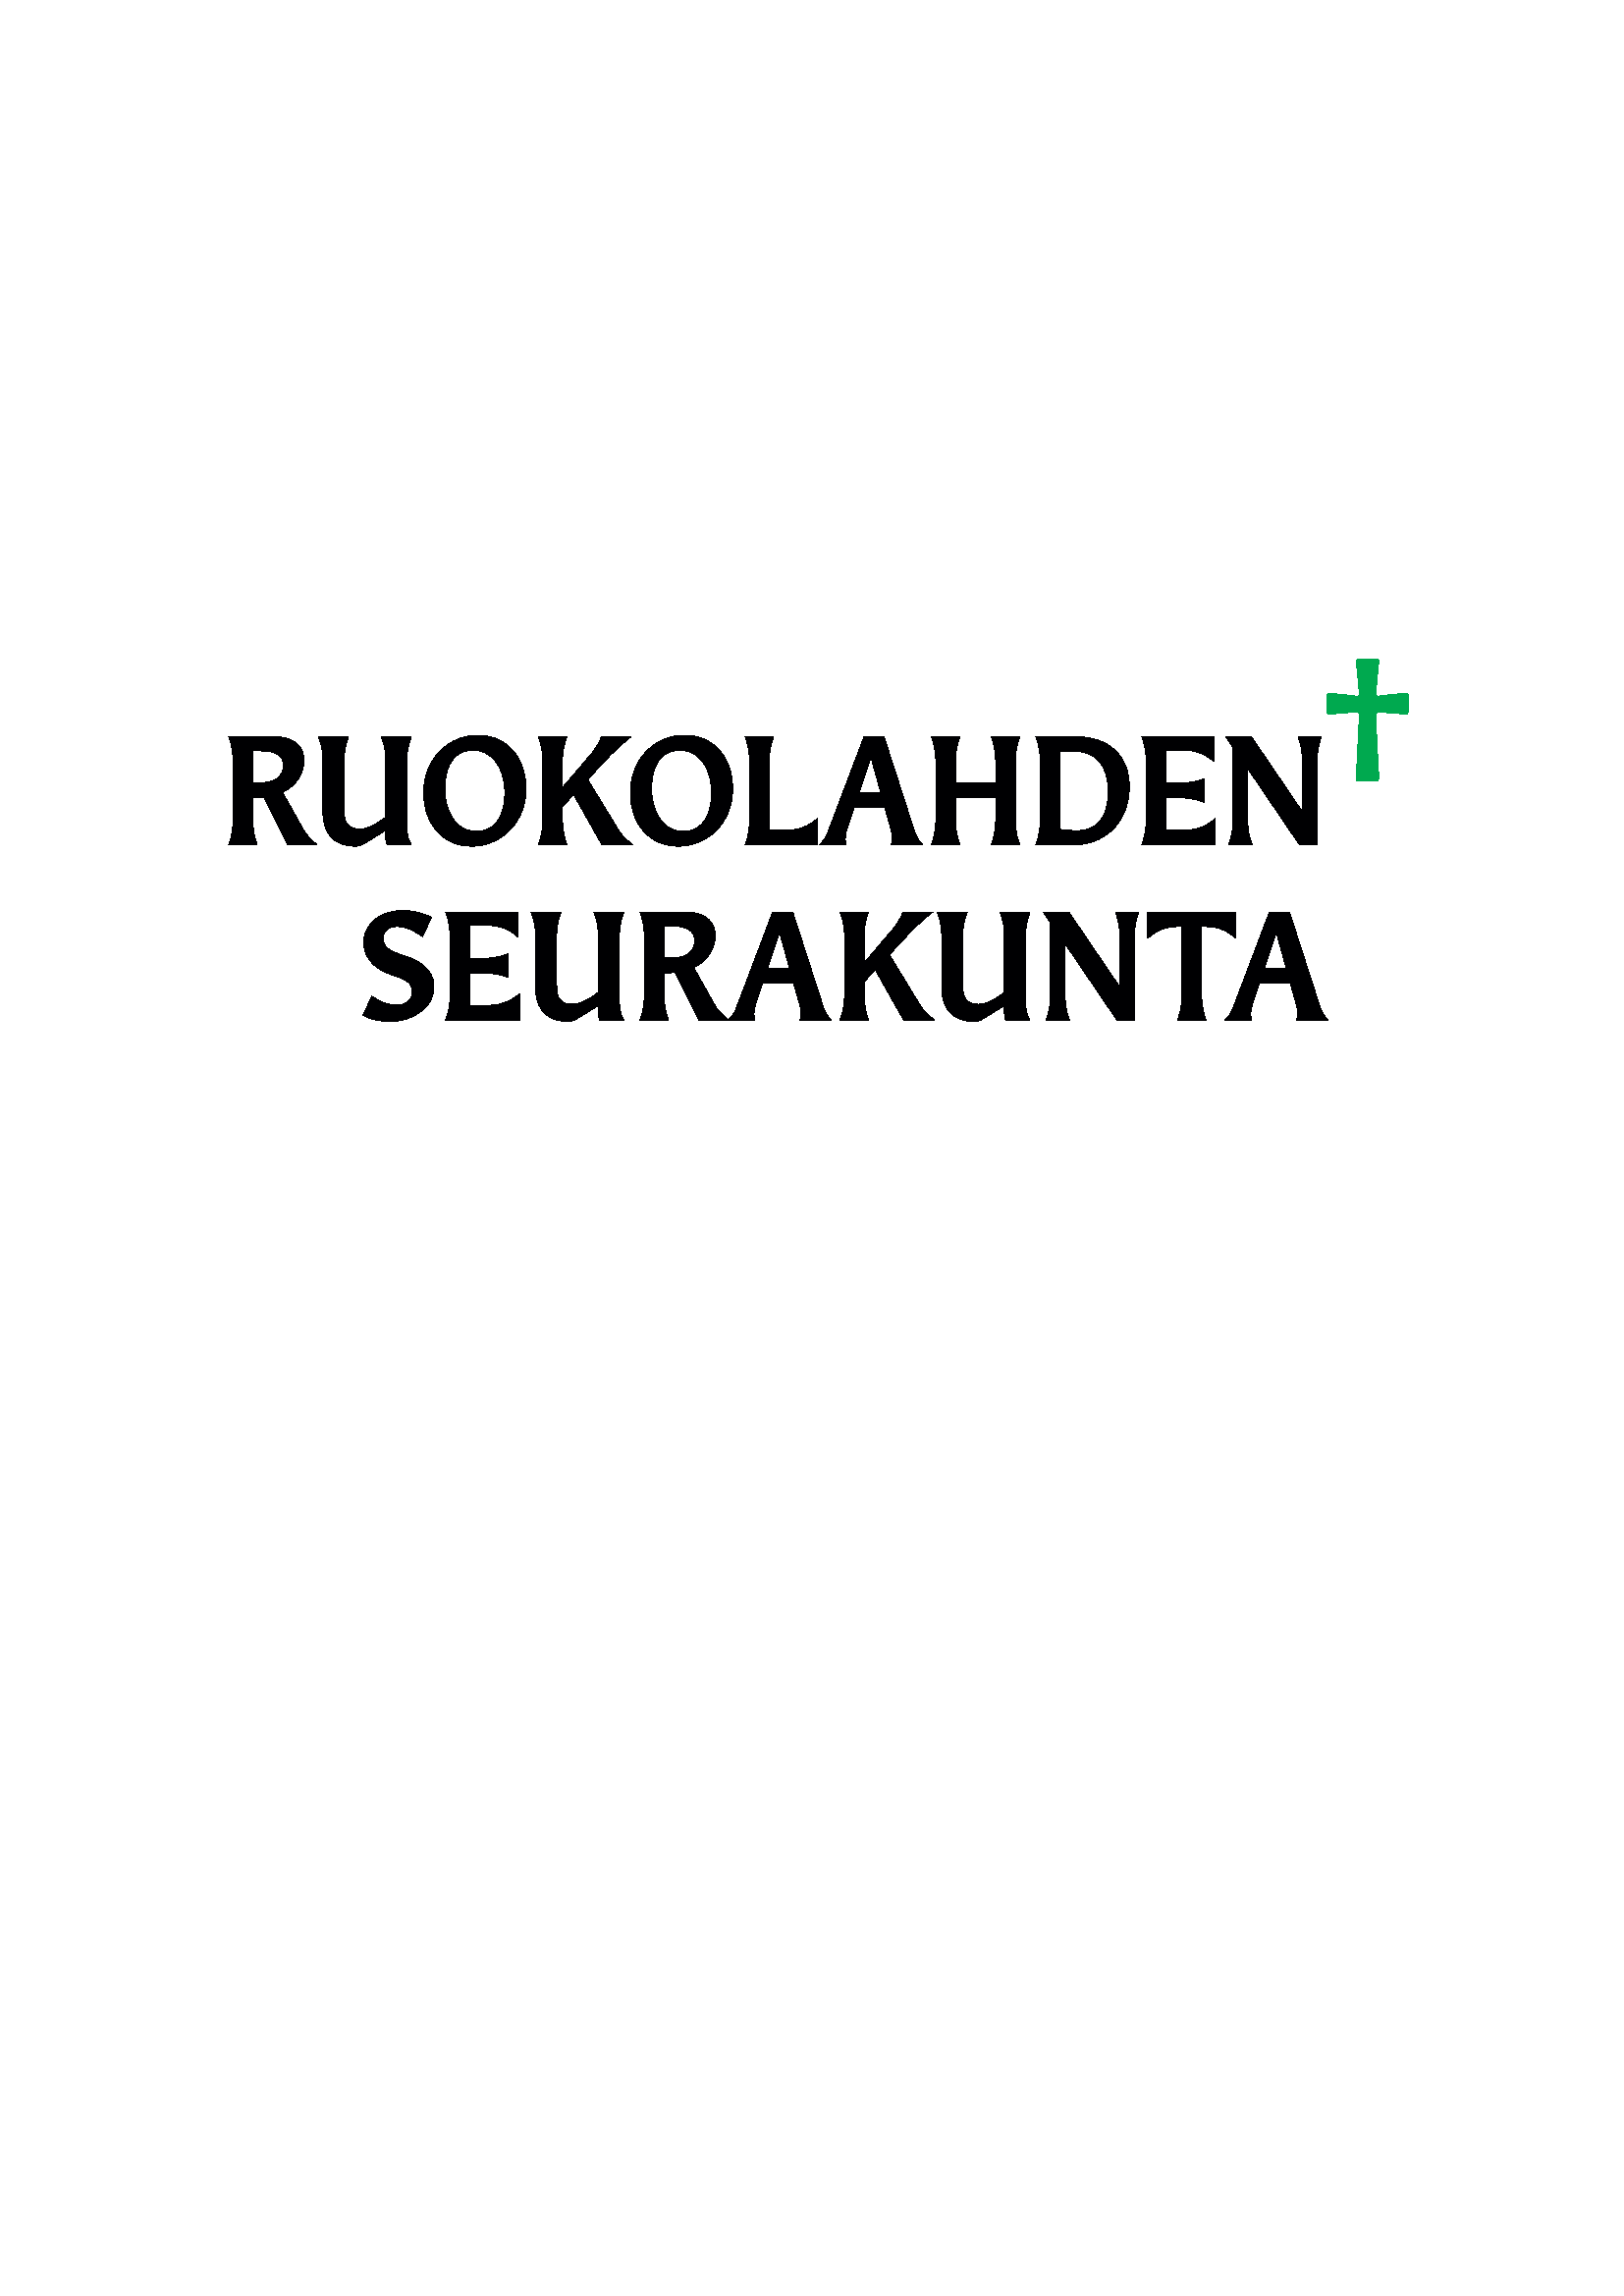 Ruokolahden seurakunnan logo